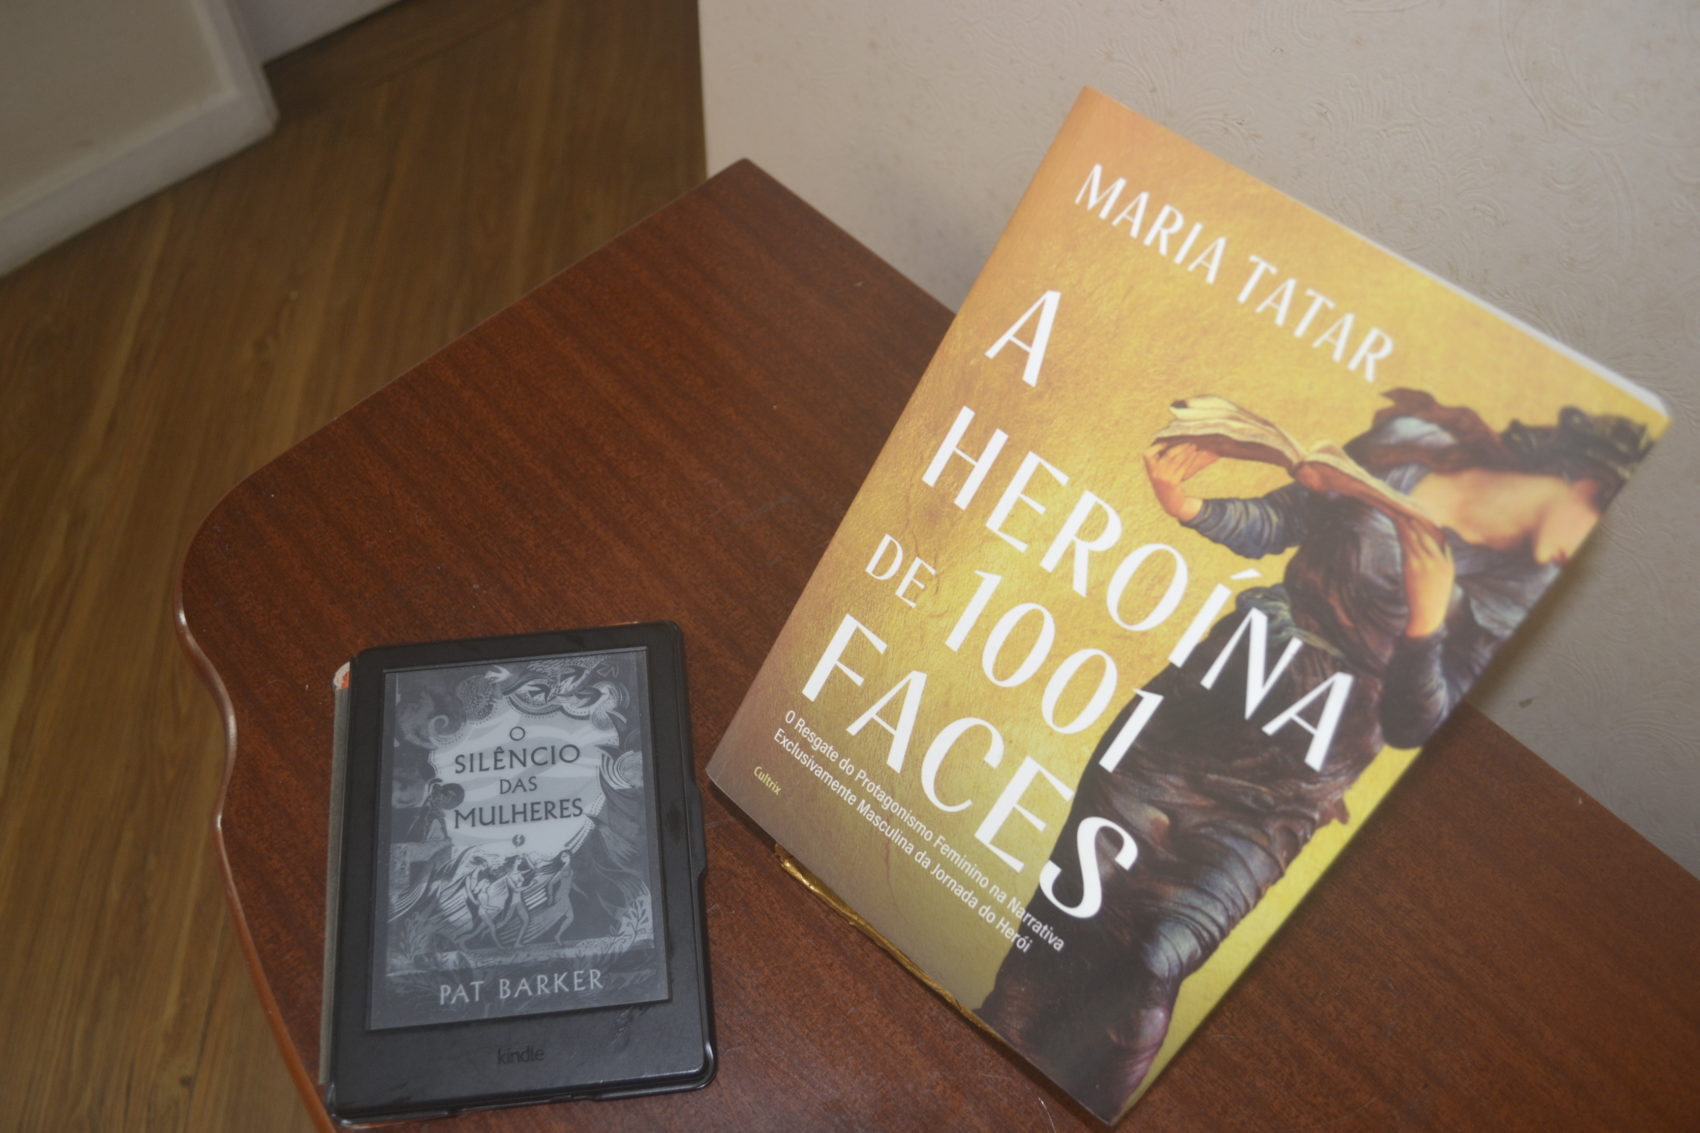 "O silêncio das mulheres", de Pat Barker, e "A Heroína de 1001 faces", de Maria Tatar, são duas obras que resgatam a história das mulheres na mitologia grega. 